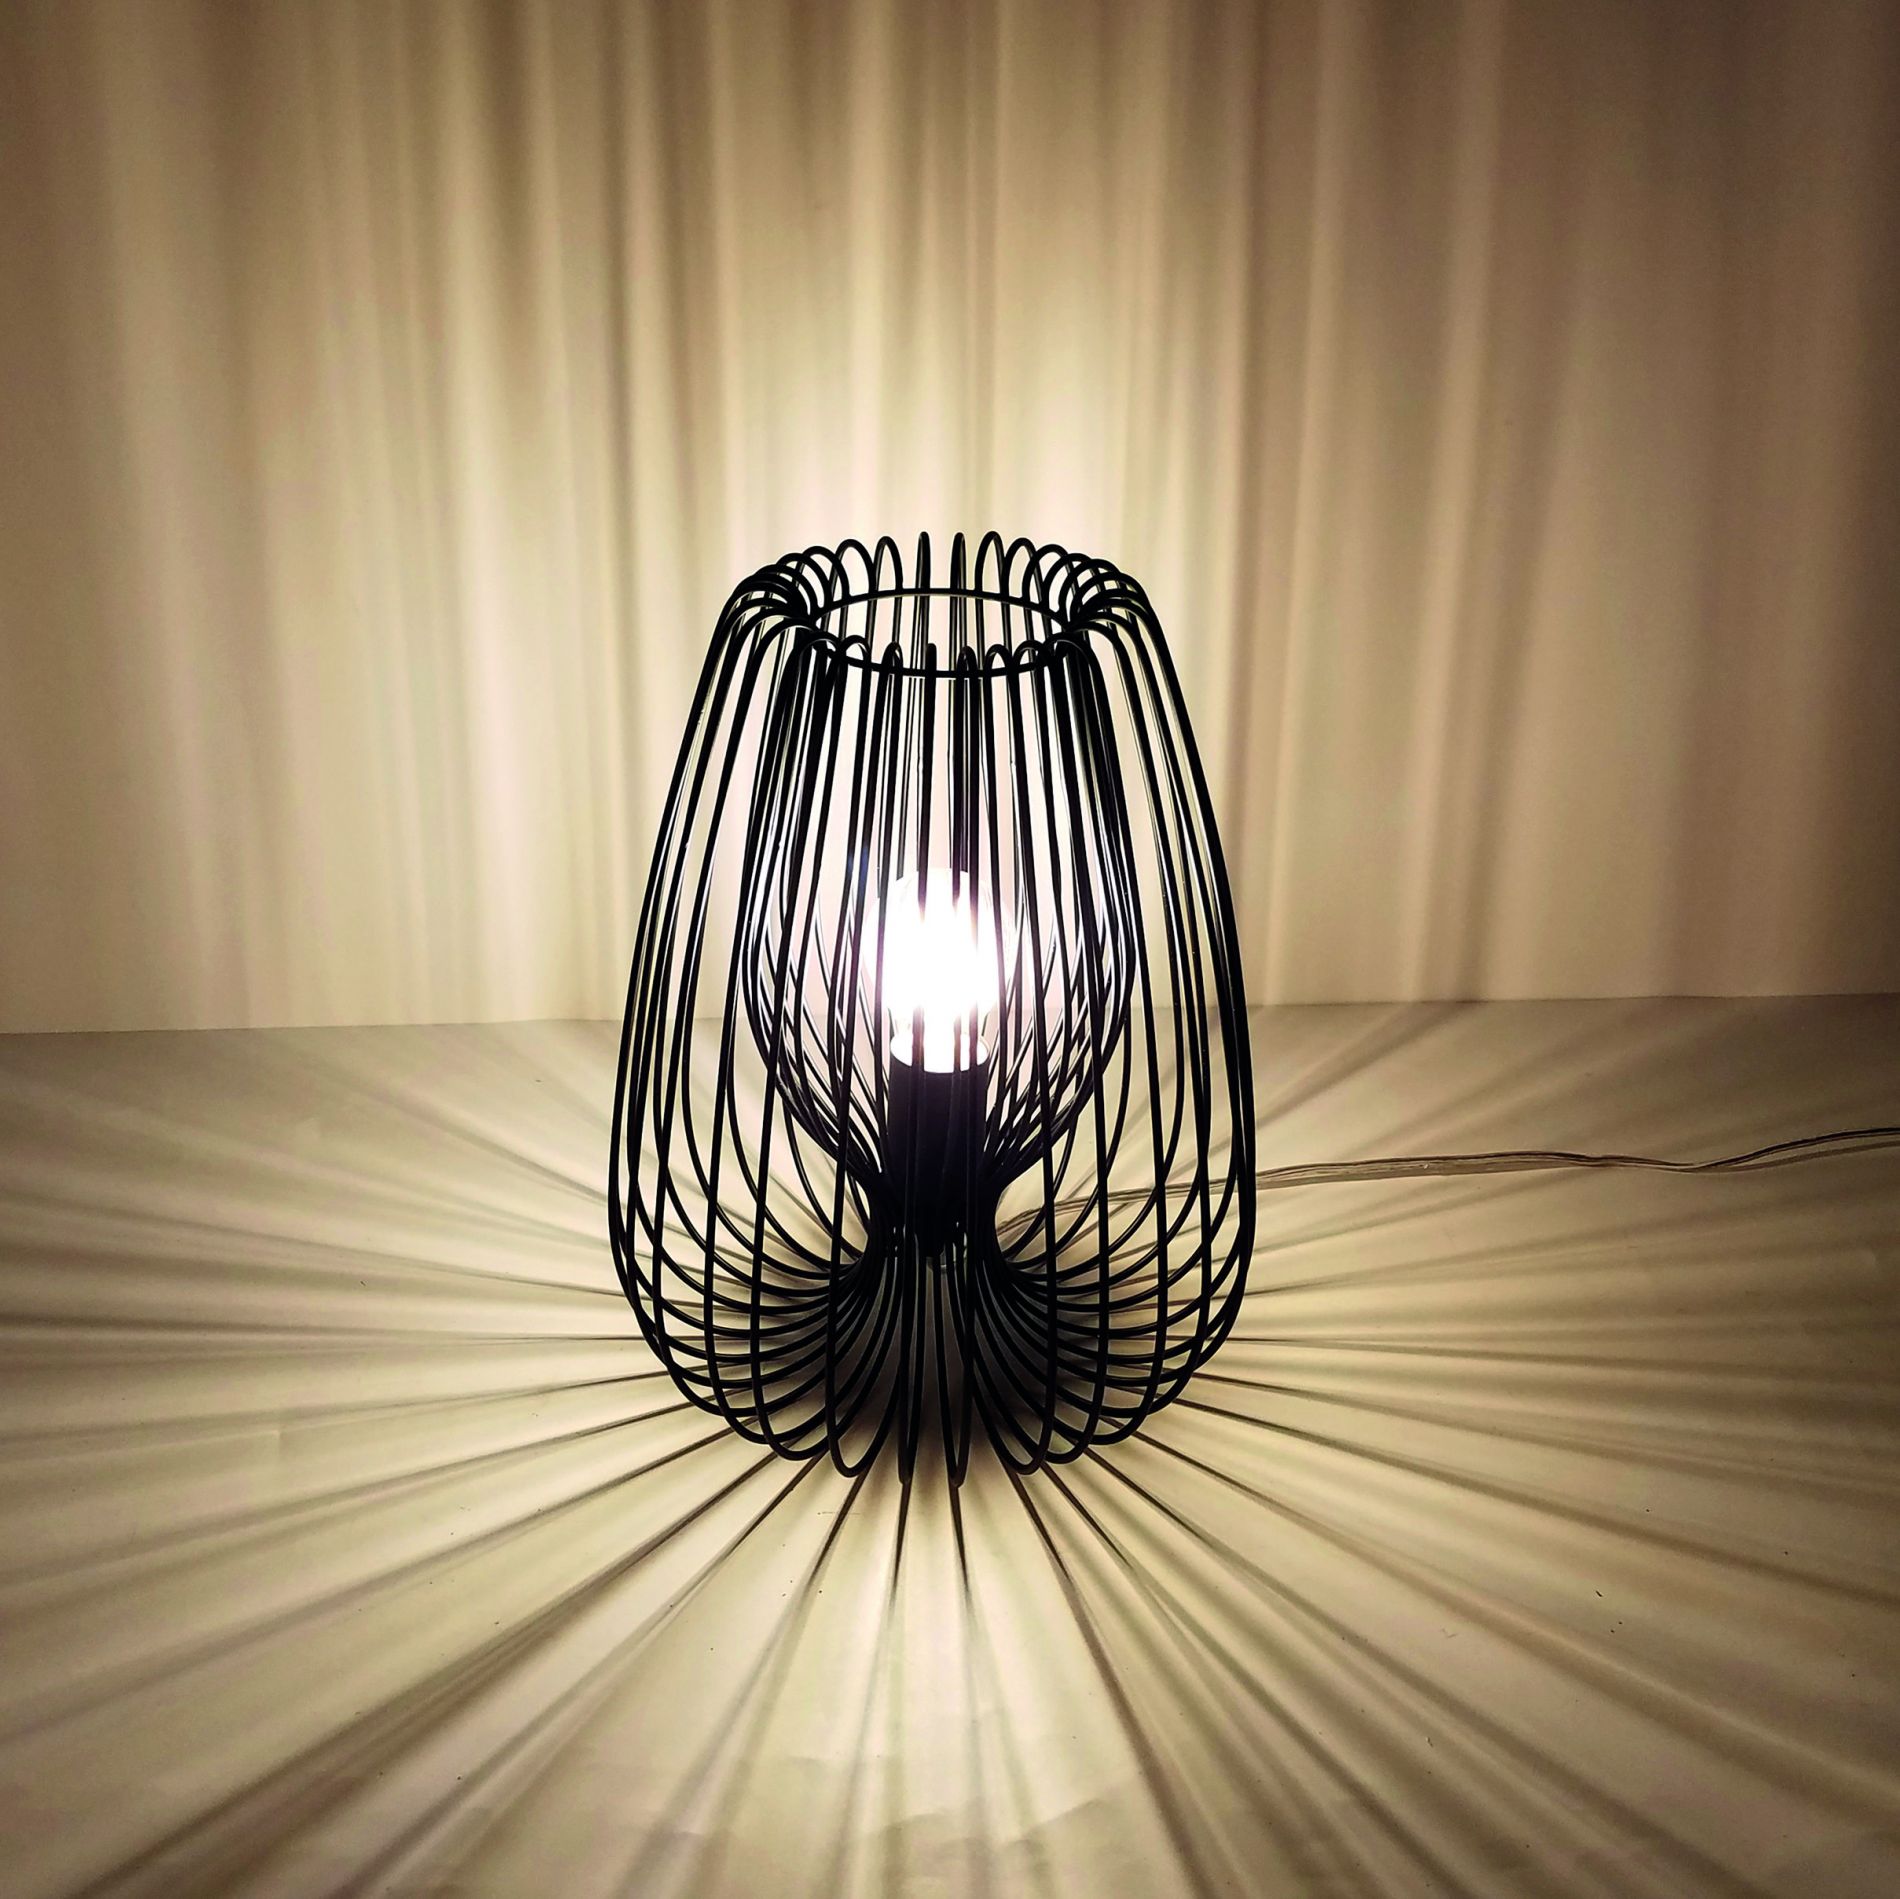 Lampe de salon design GLASGOW noire mate en métal